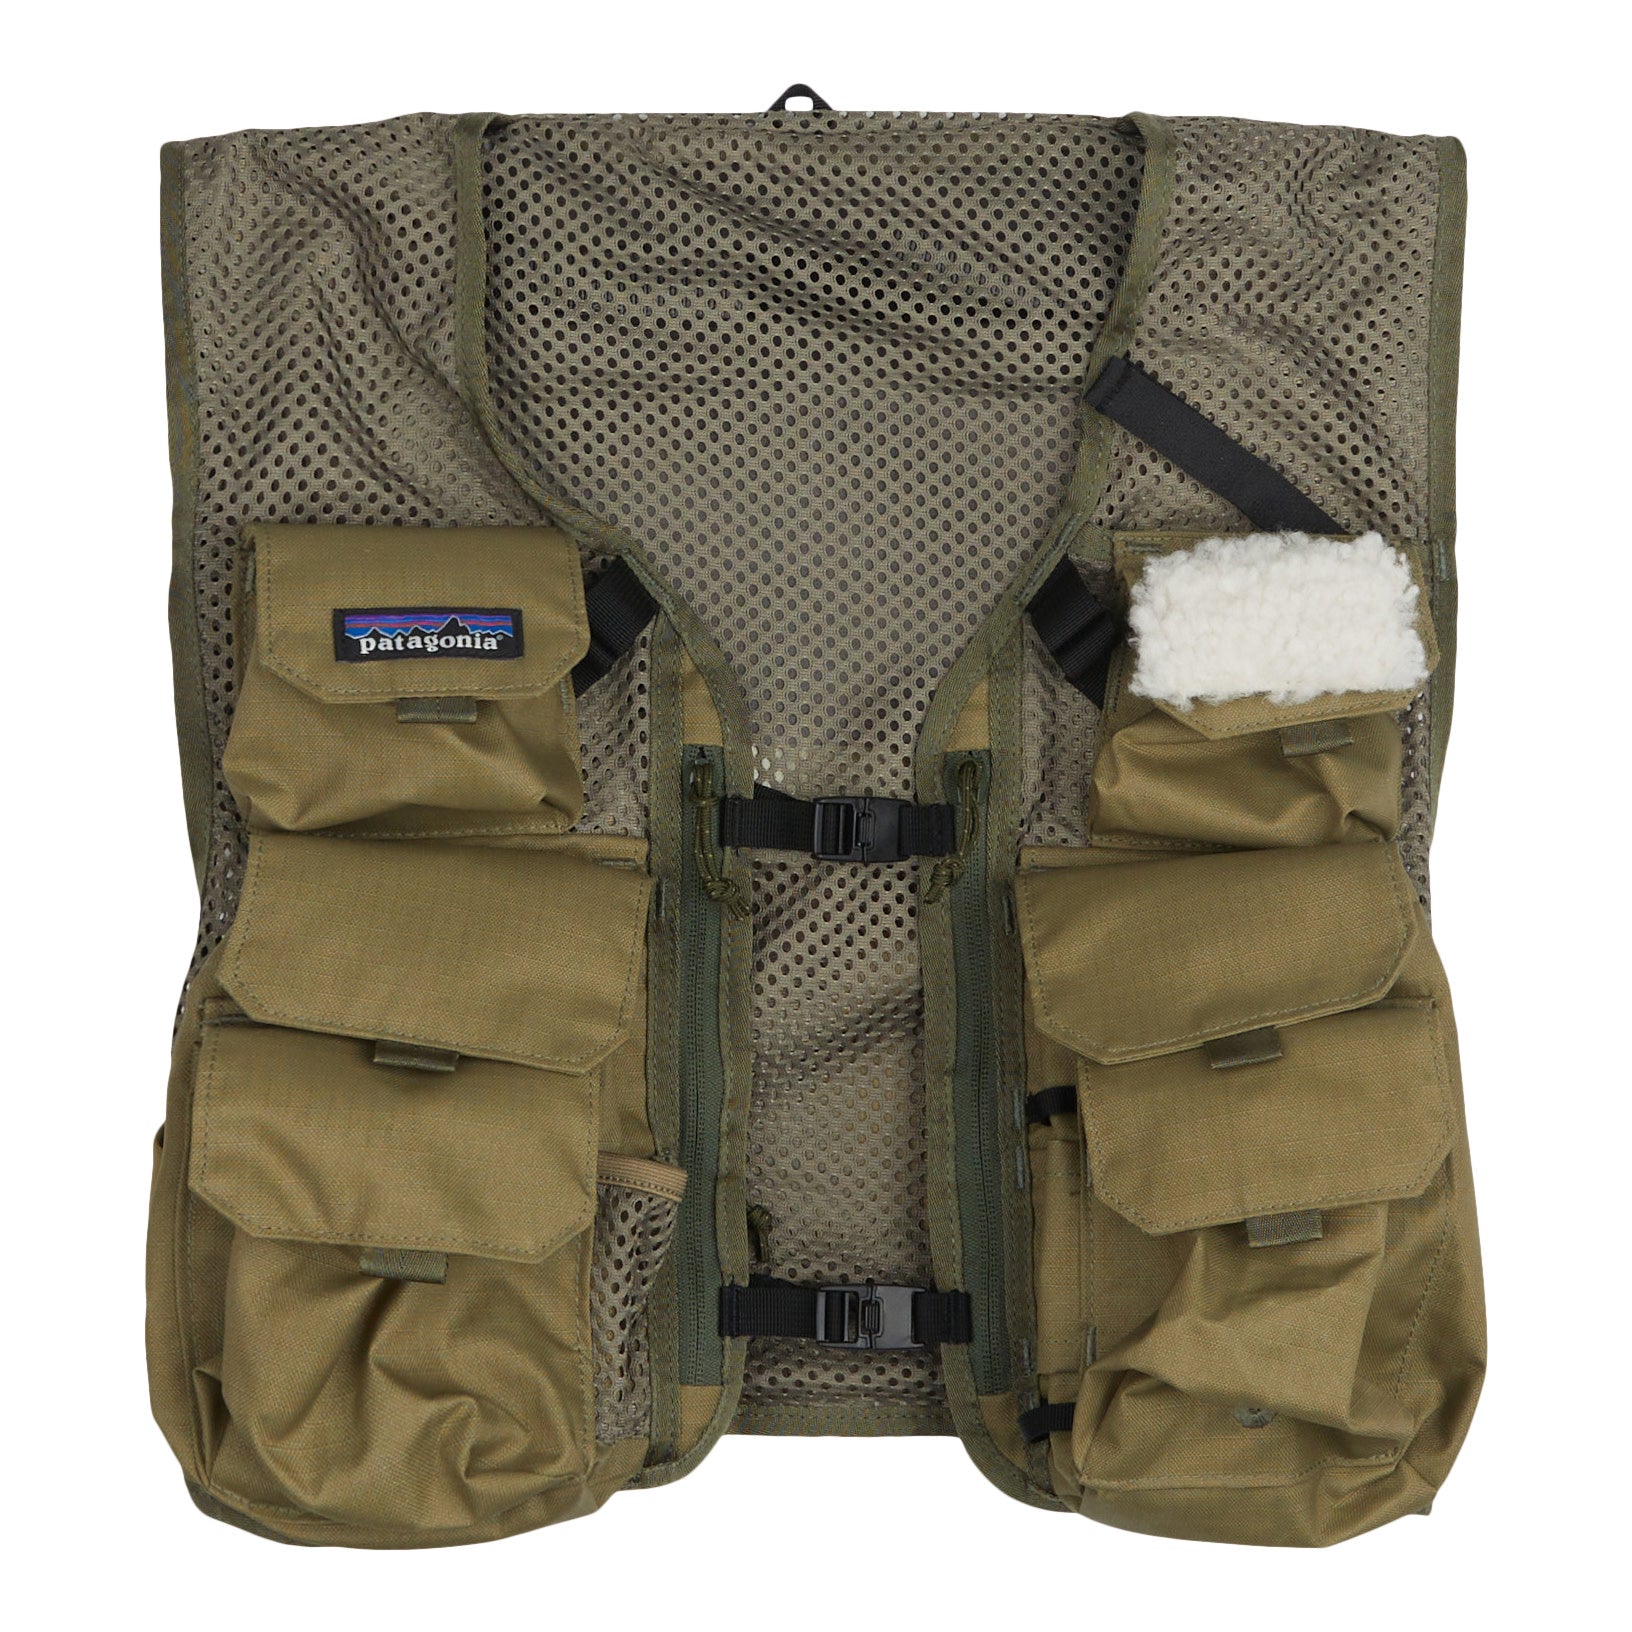 used Patagonia Worn Wear-Stealth Pack VEST-SAGE Khaki-Neutral/Beige-81962-L